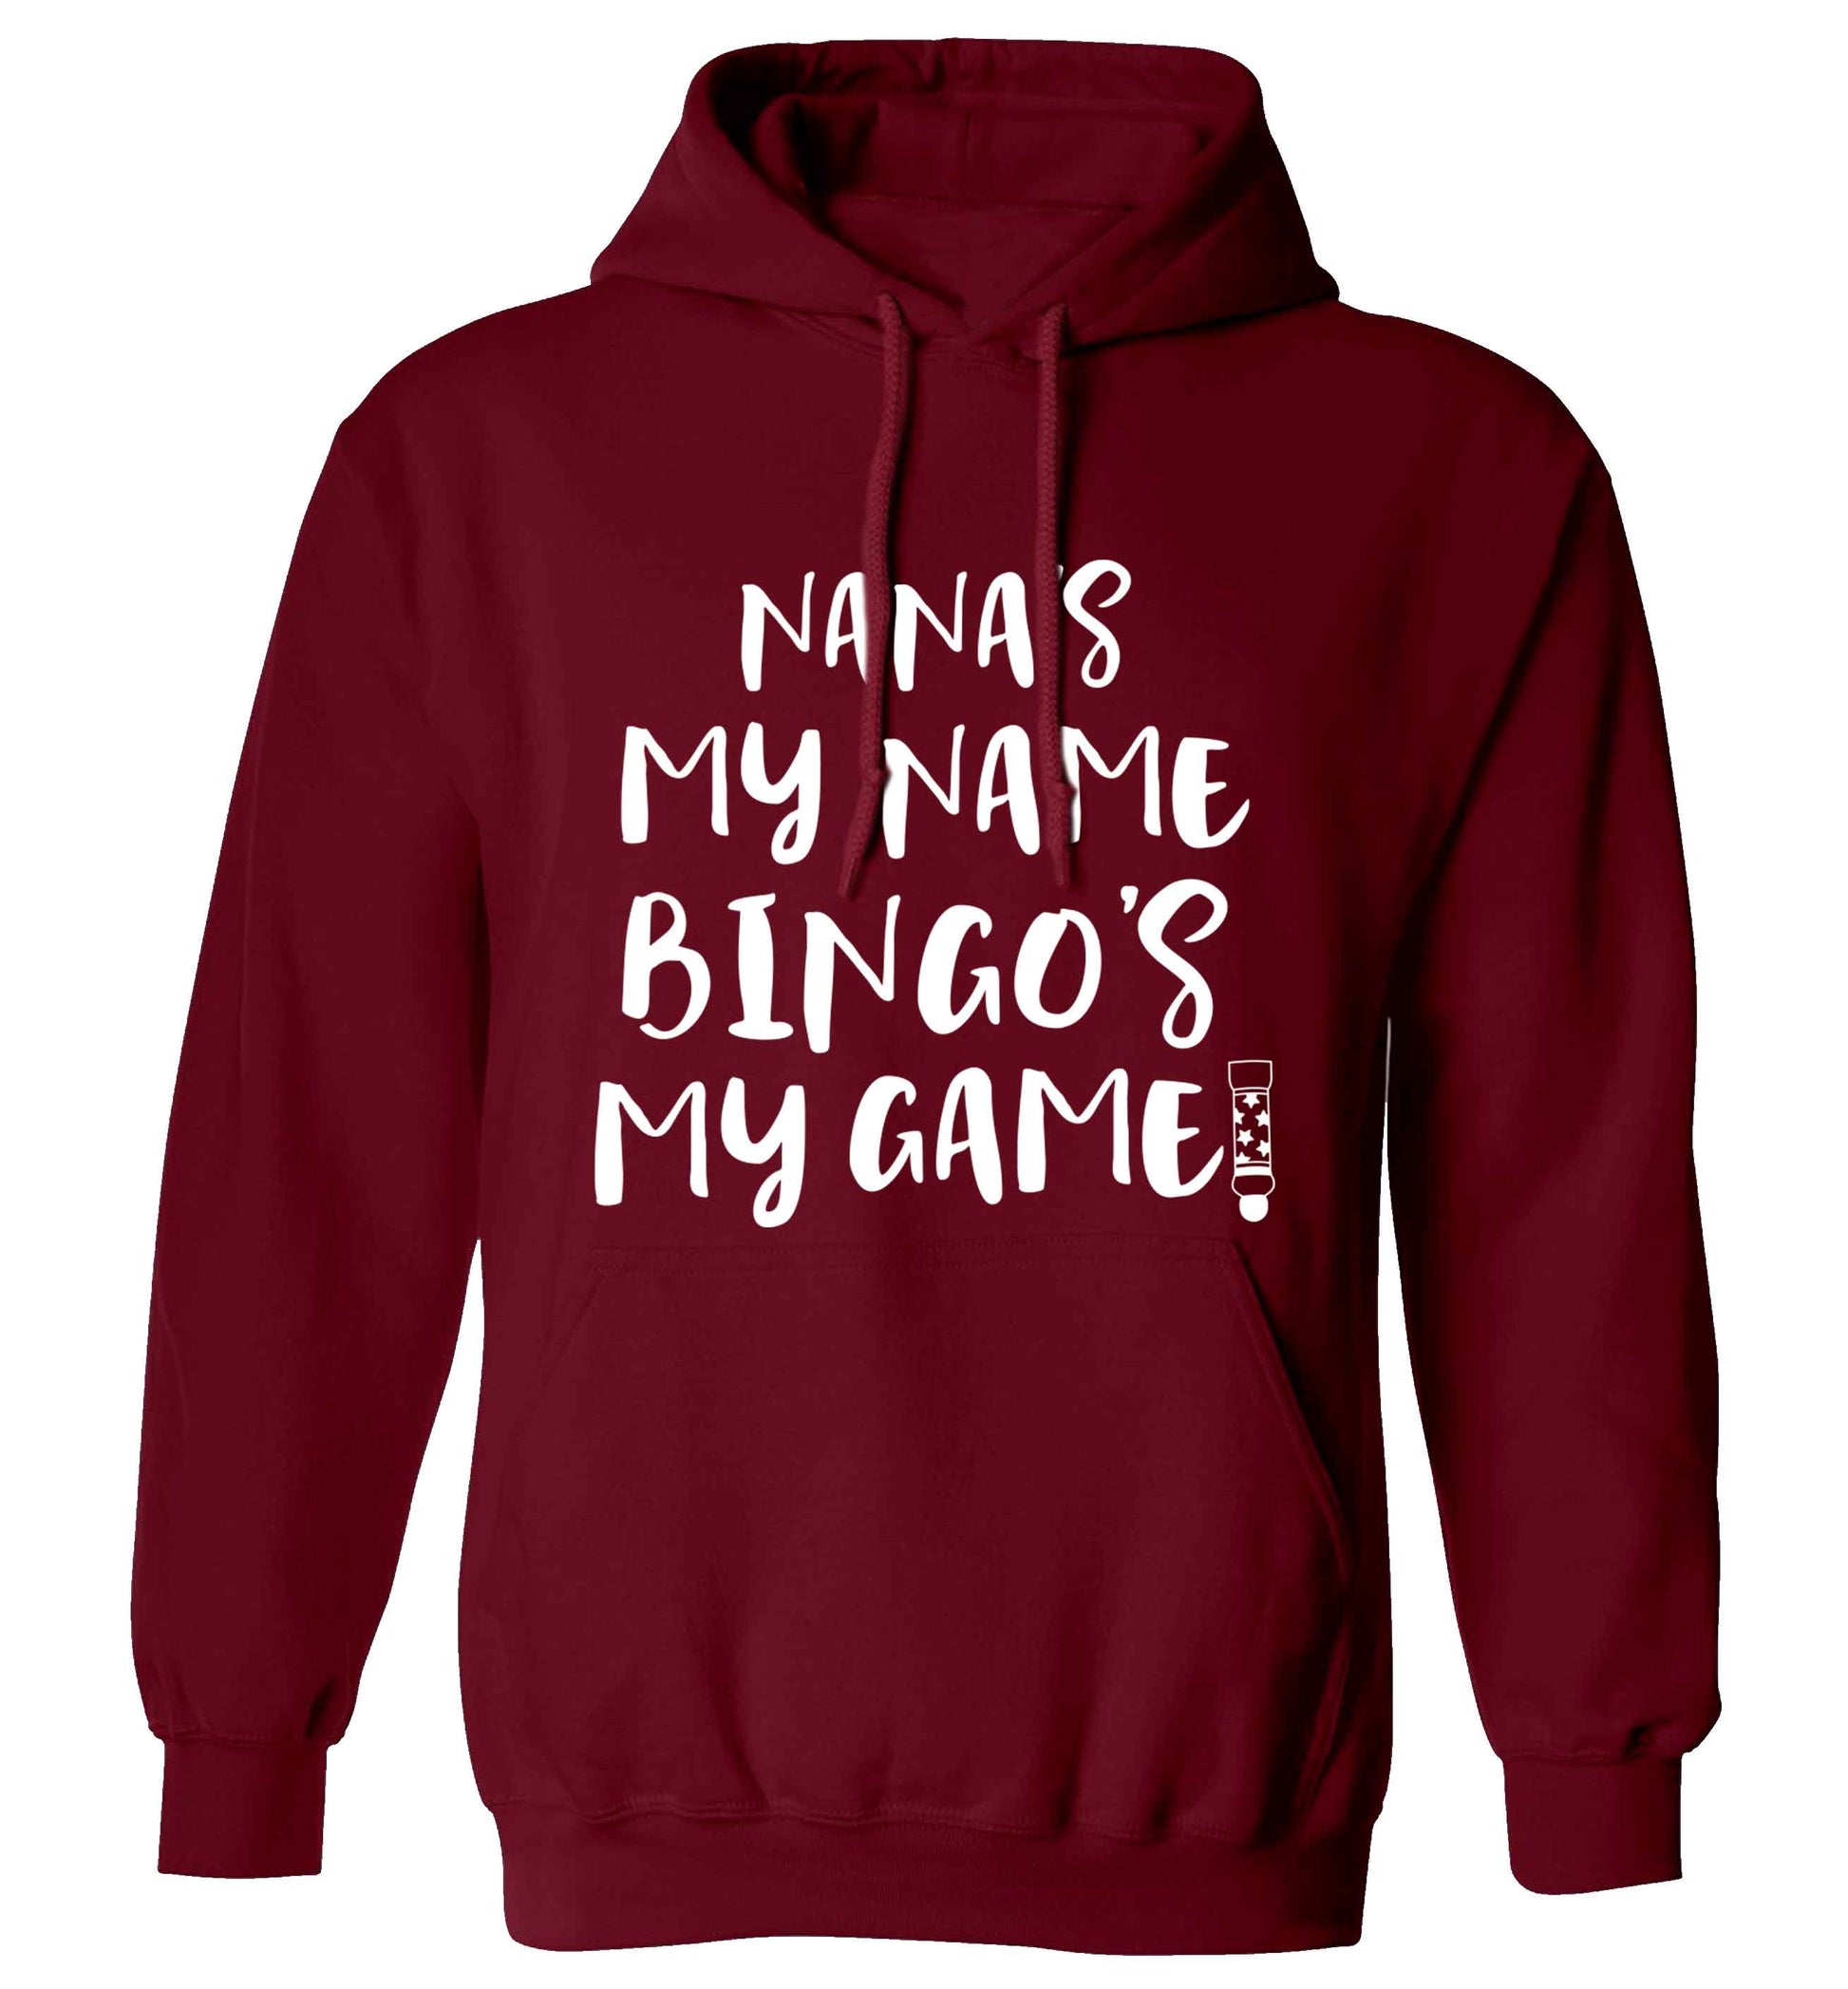 Nana's my name bingo's my game! adults unisex maroon hoodie 2XL